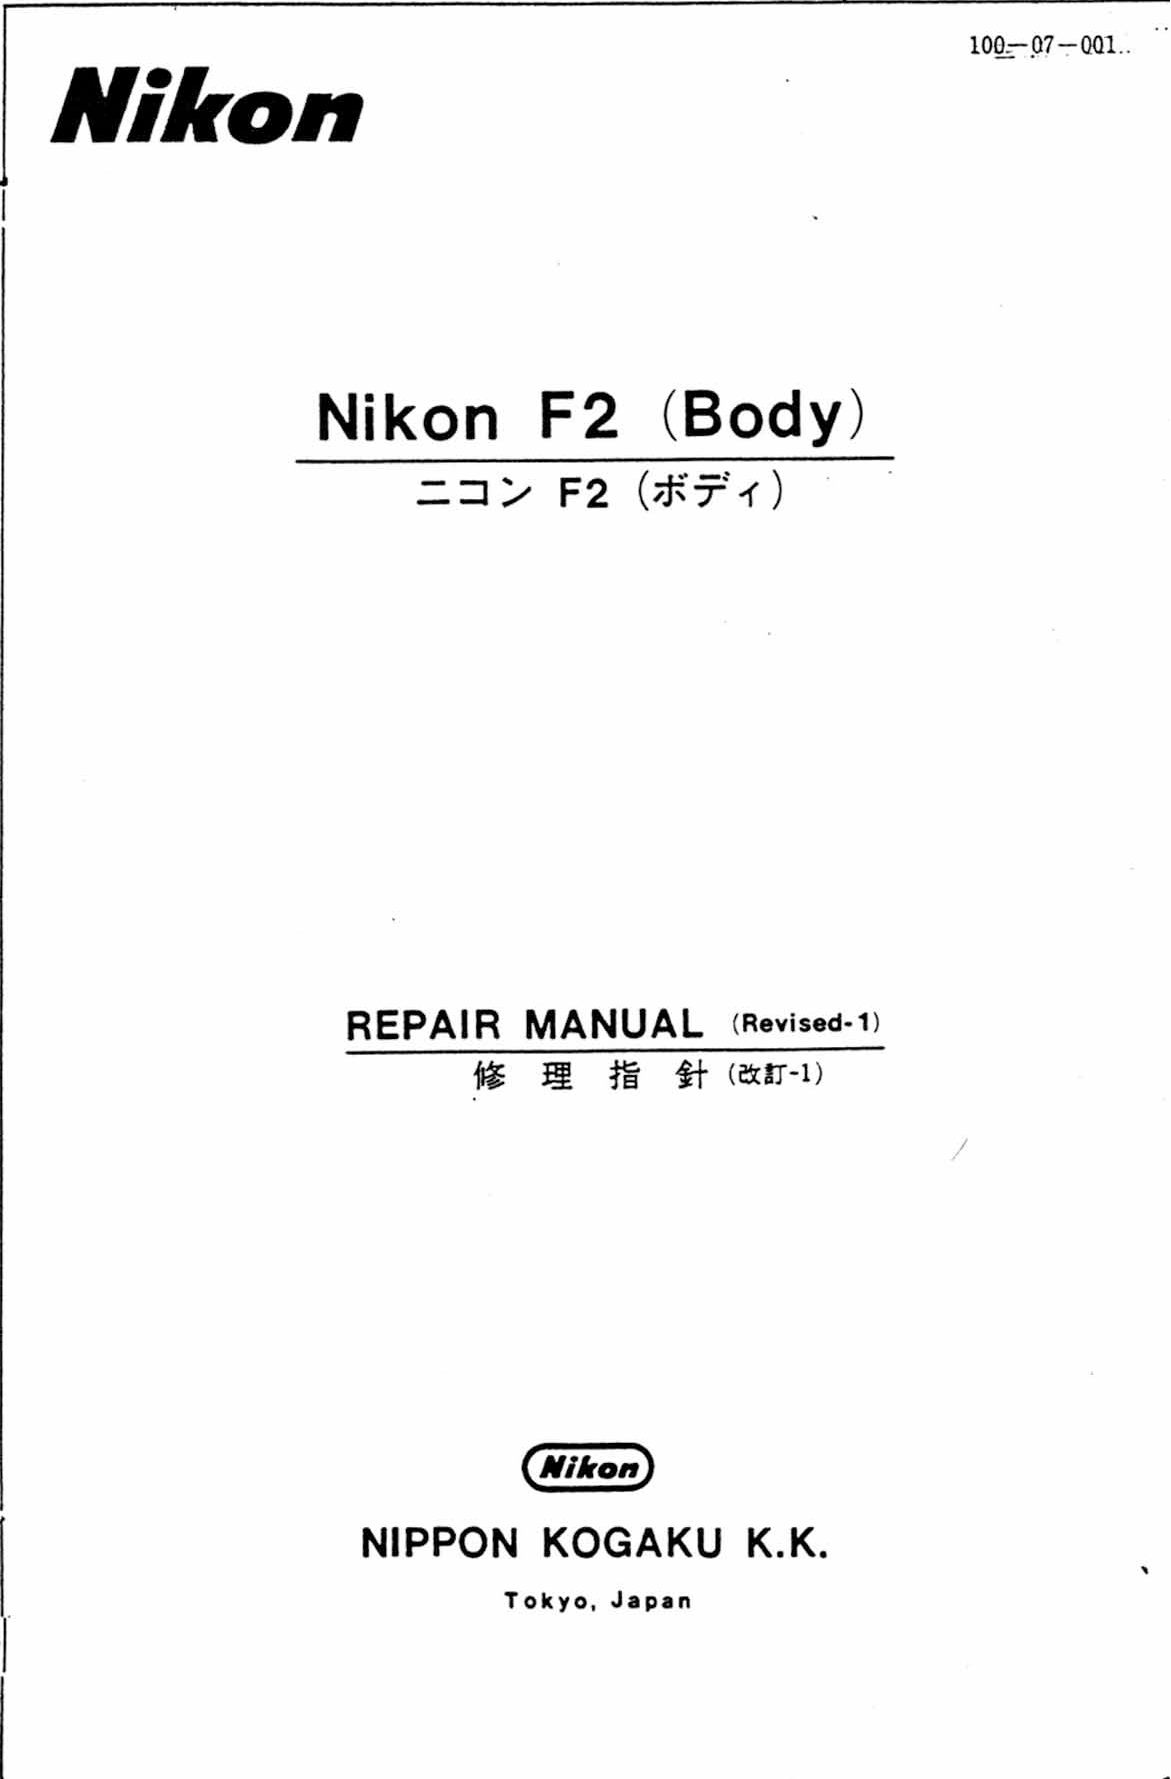 Nikon F2 Manual Repair